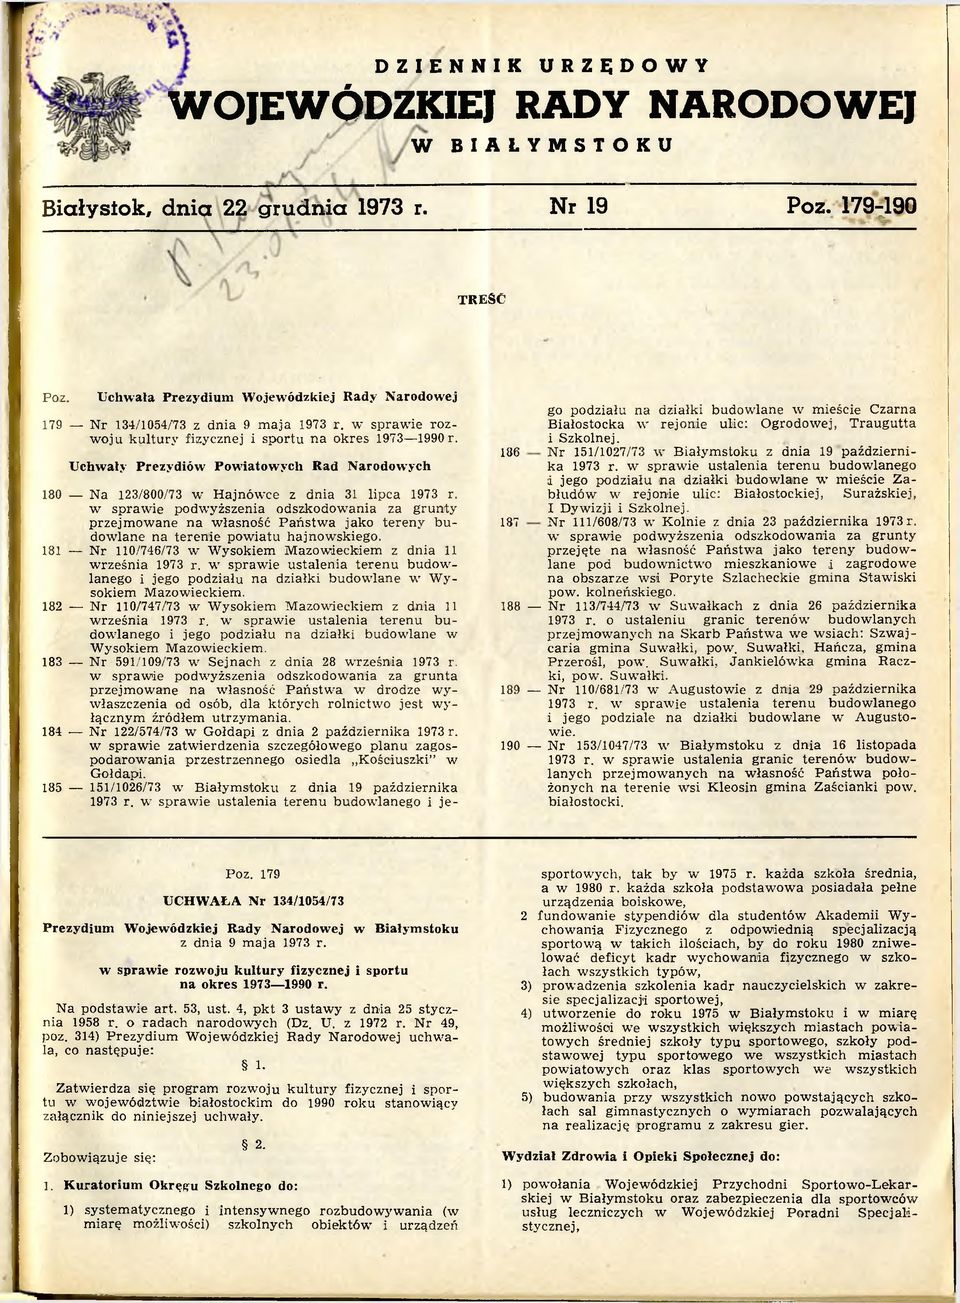 Uchwały Prezydiów Powiatowych Rad Narodowych 180 Na 123/800/73 w Hajnówce z dnia 31 lipca 1973 r.